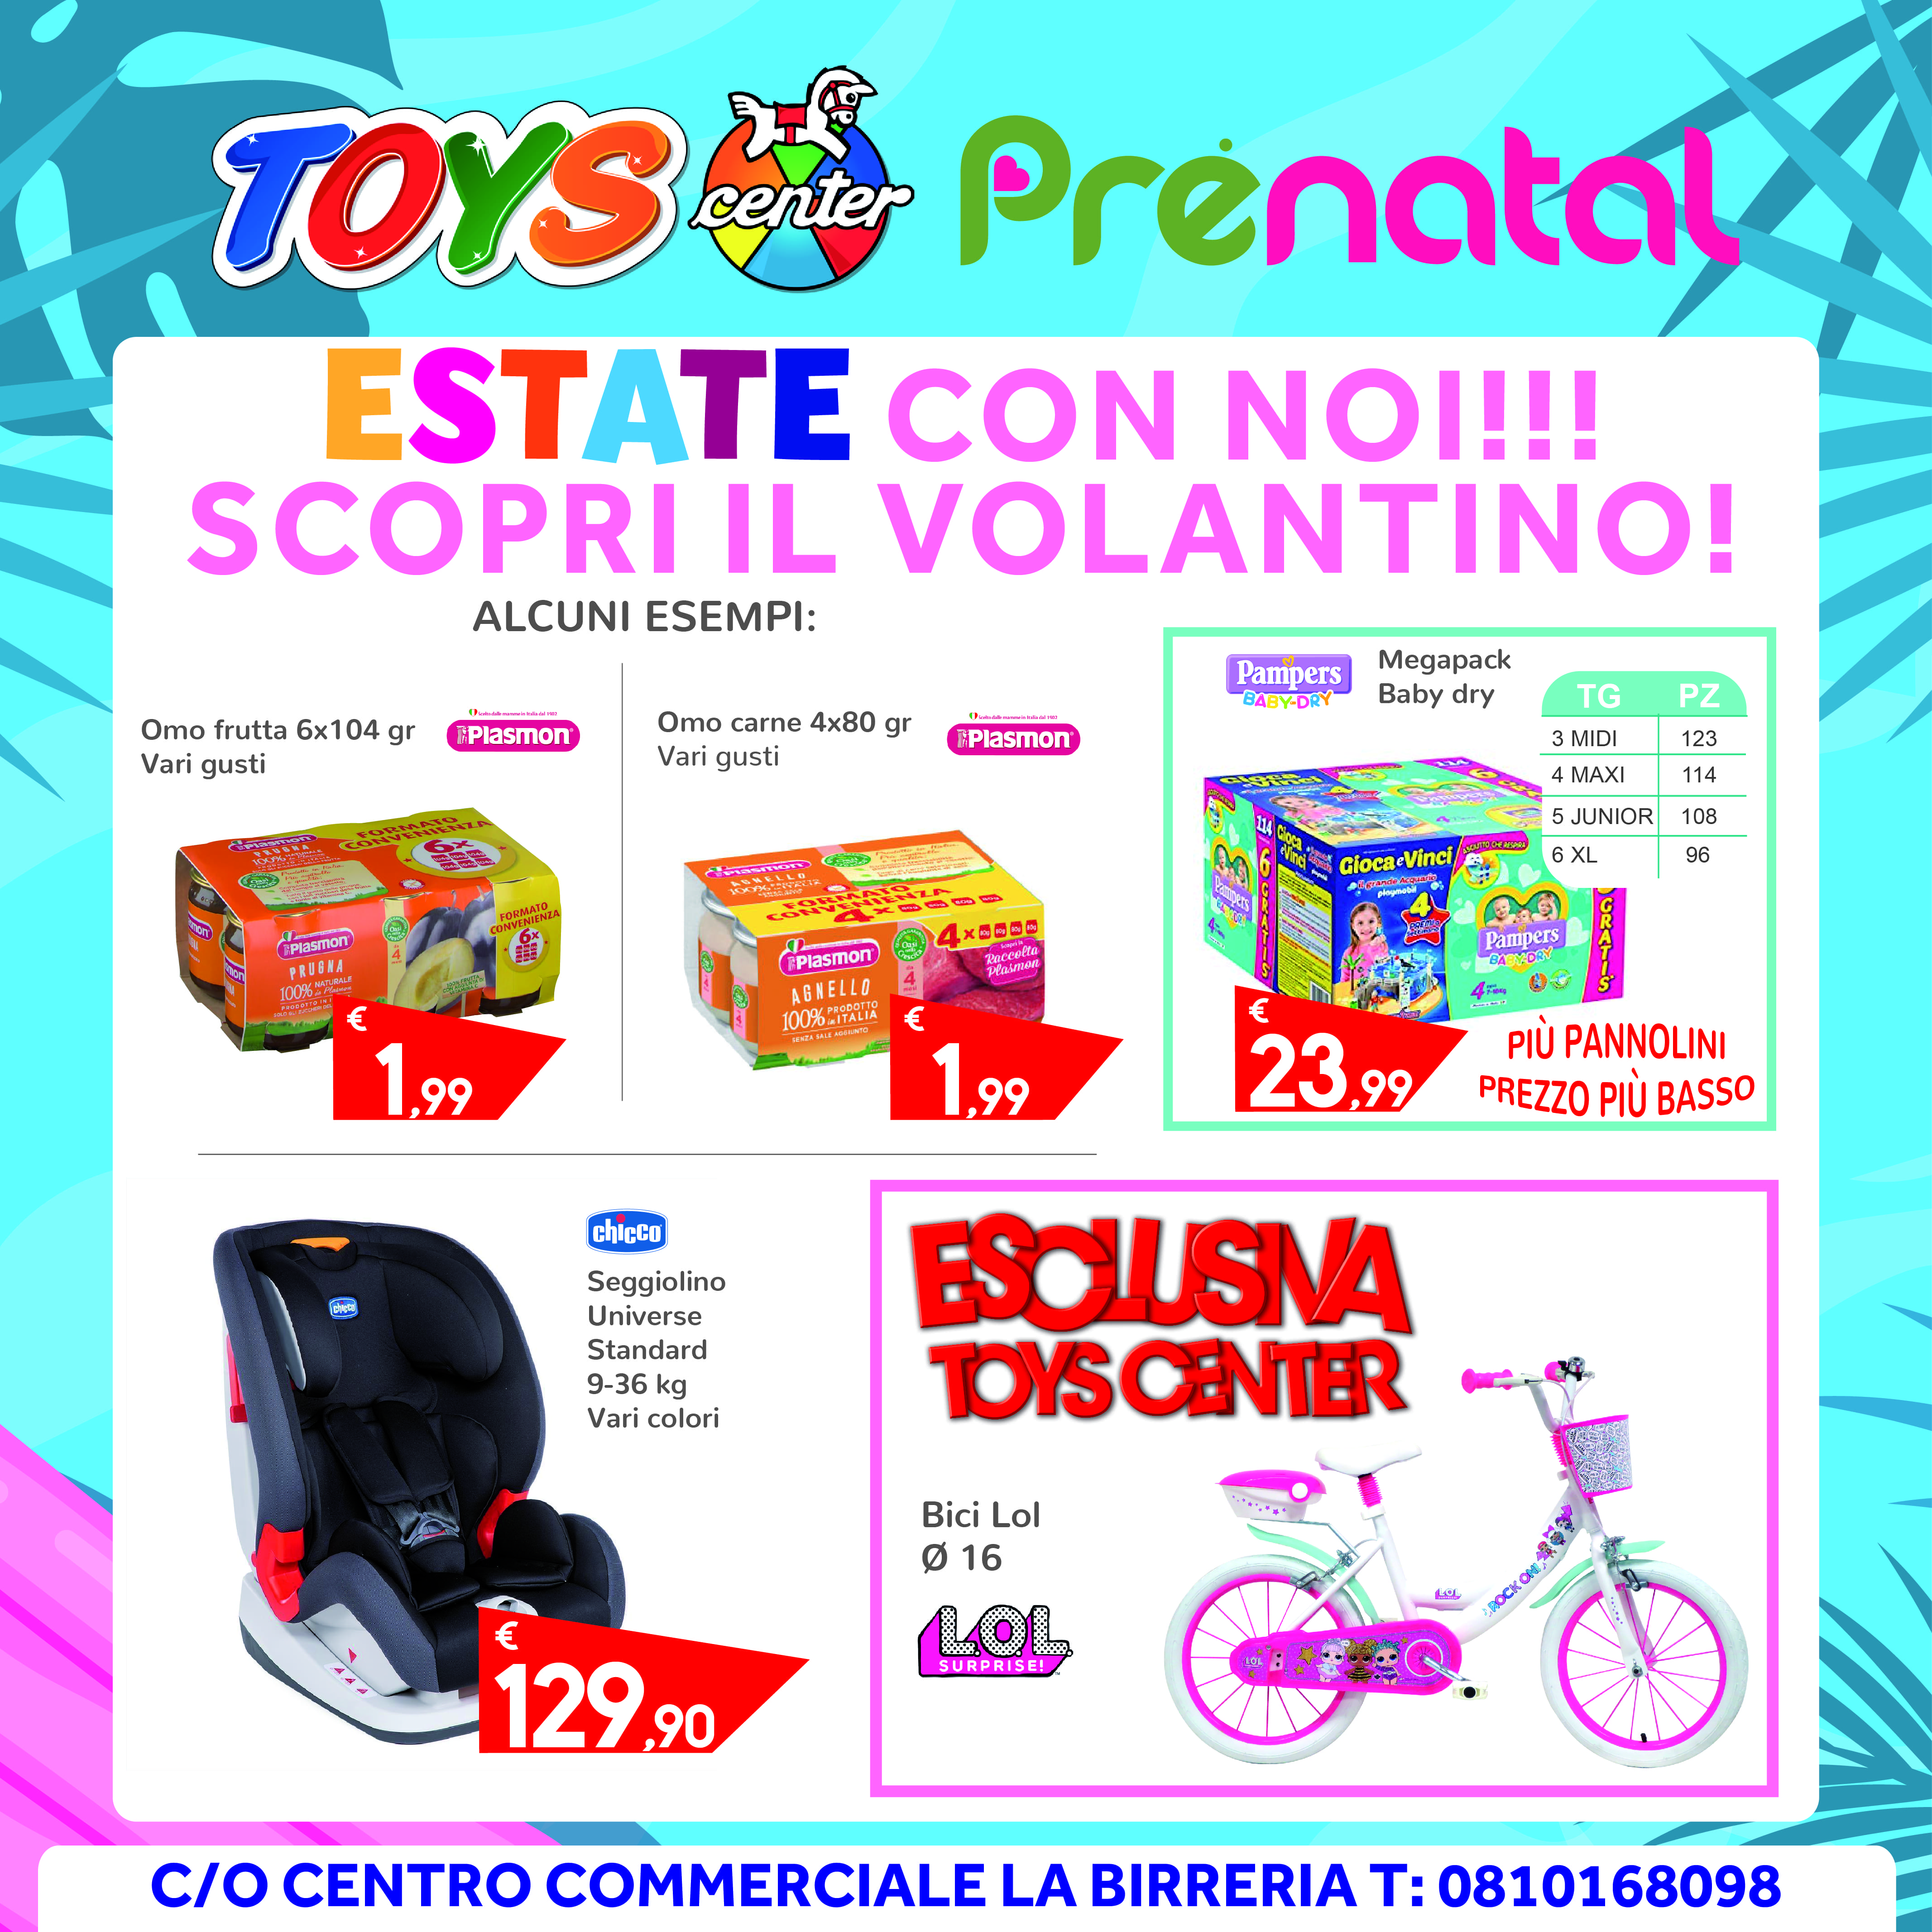 toys center promozioni